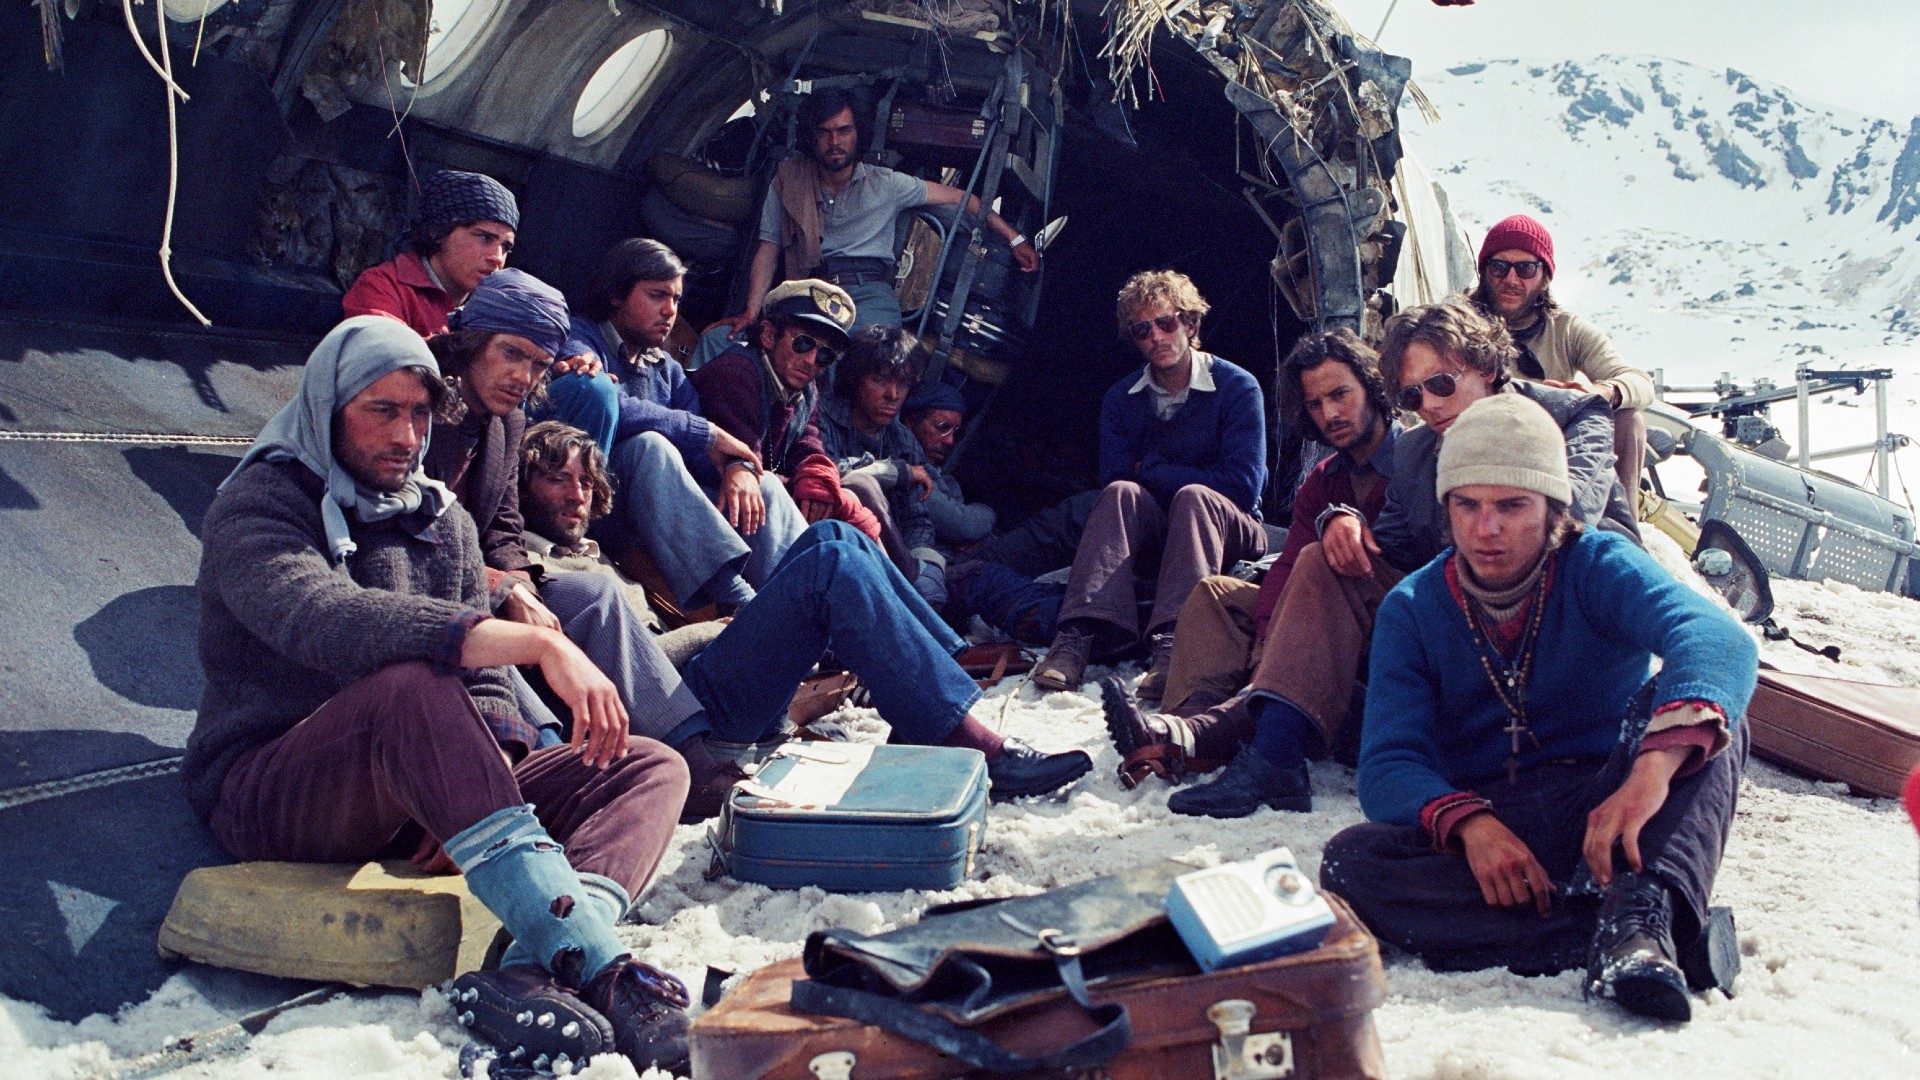 Los supervivientes se acurrucan entre los restos del avión en un fotograma de La Sociedad de la Nieve